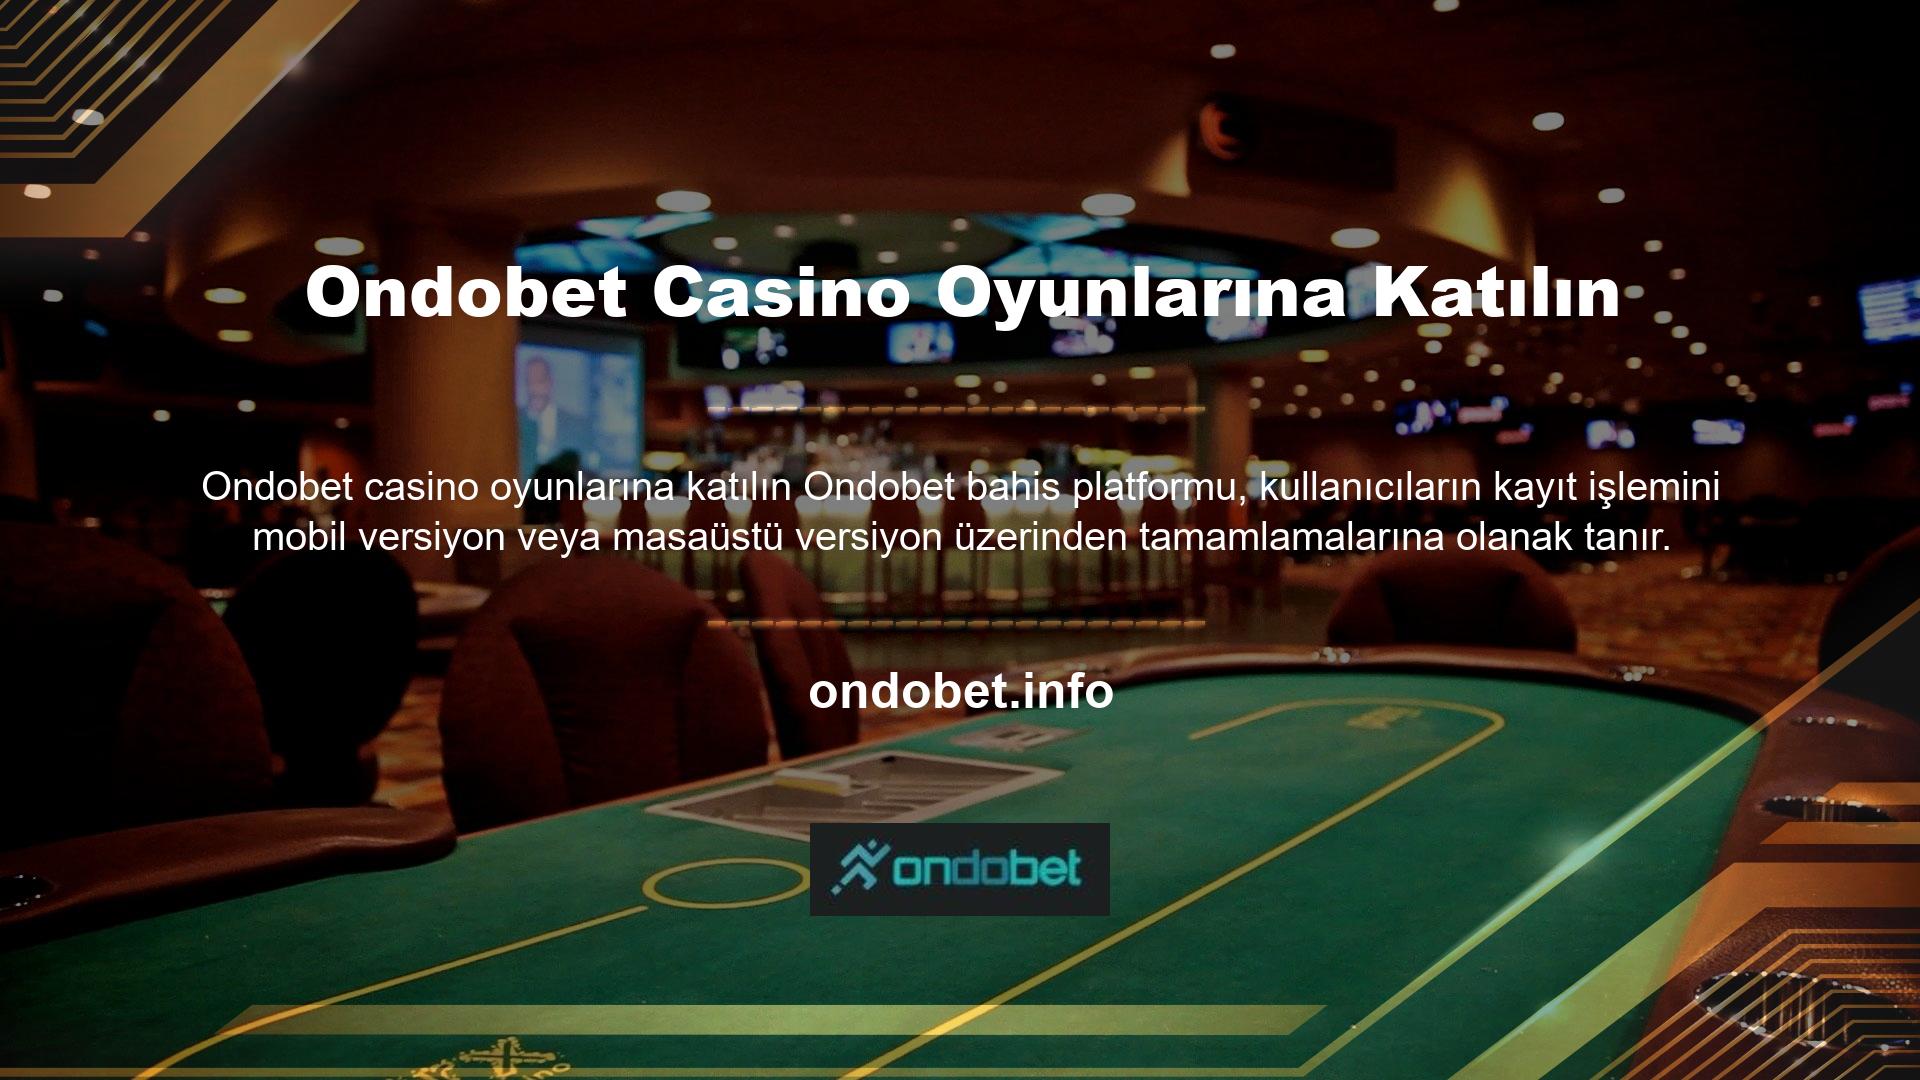 Bet Ondobet Casino oyunlarının kullanıcıları, kayıt sırasında kullanılan cihaz ve ağ bağlantısından sorumludur